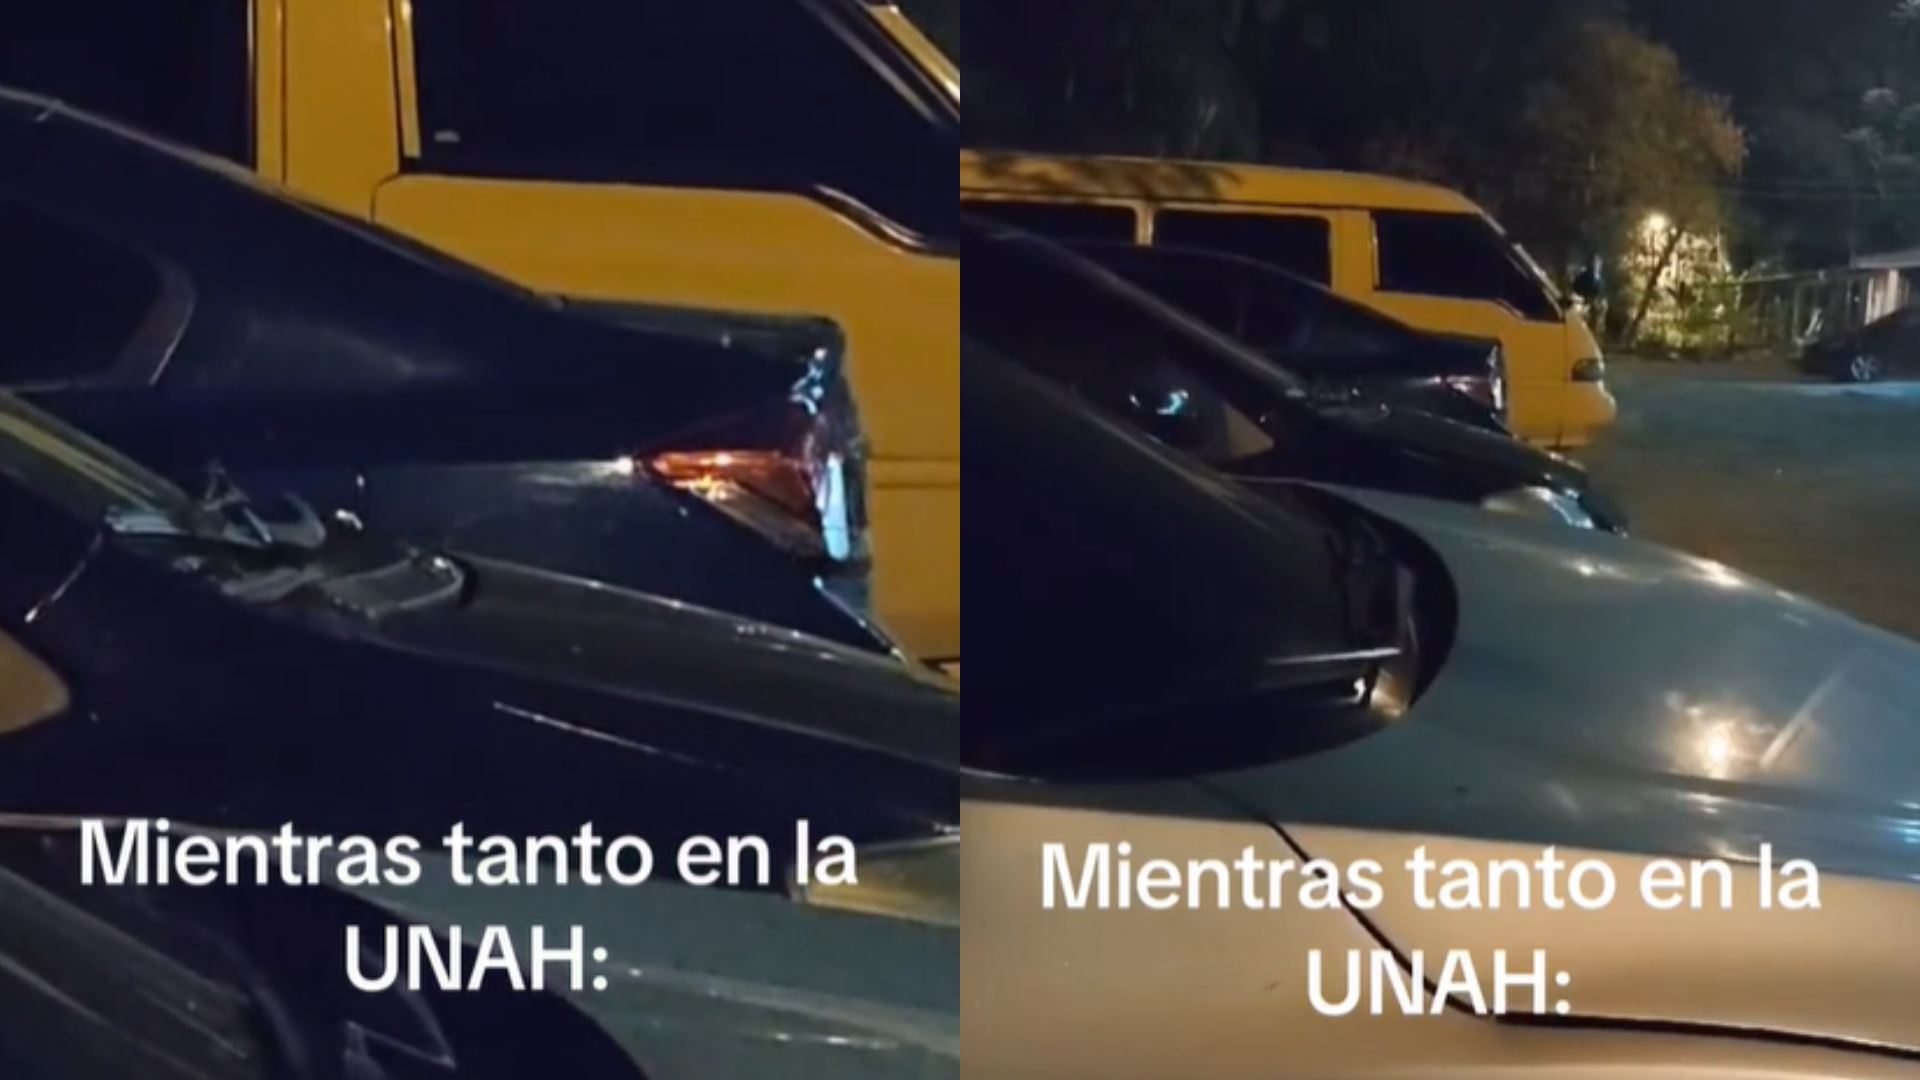 VIDEO | Captan movimientos extraños en carro en la UNAH